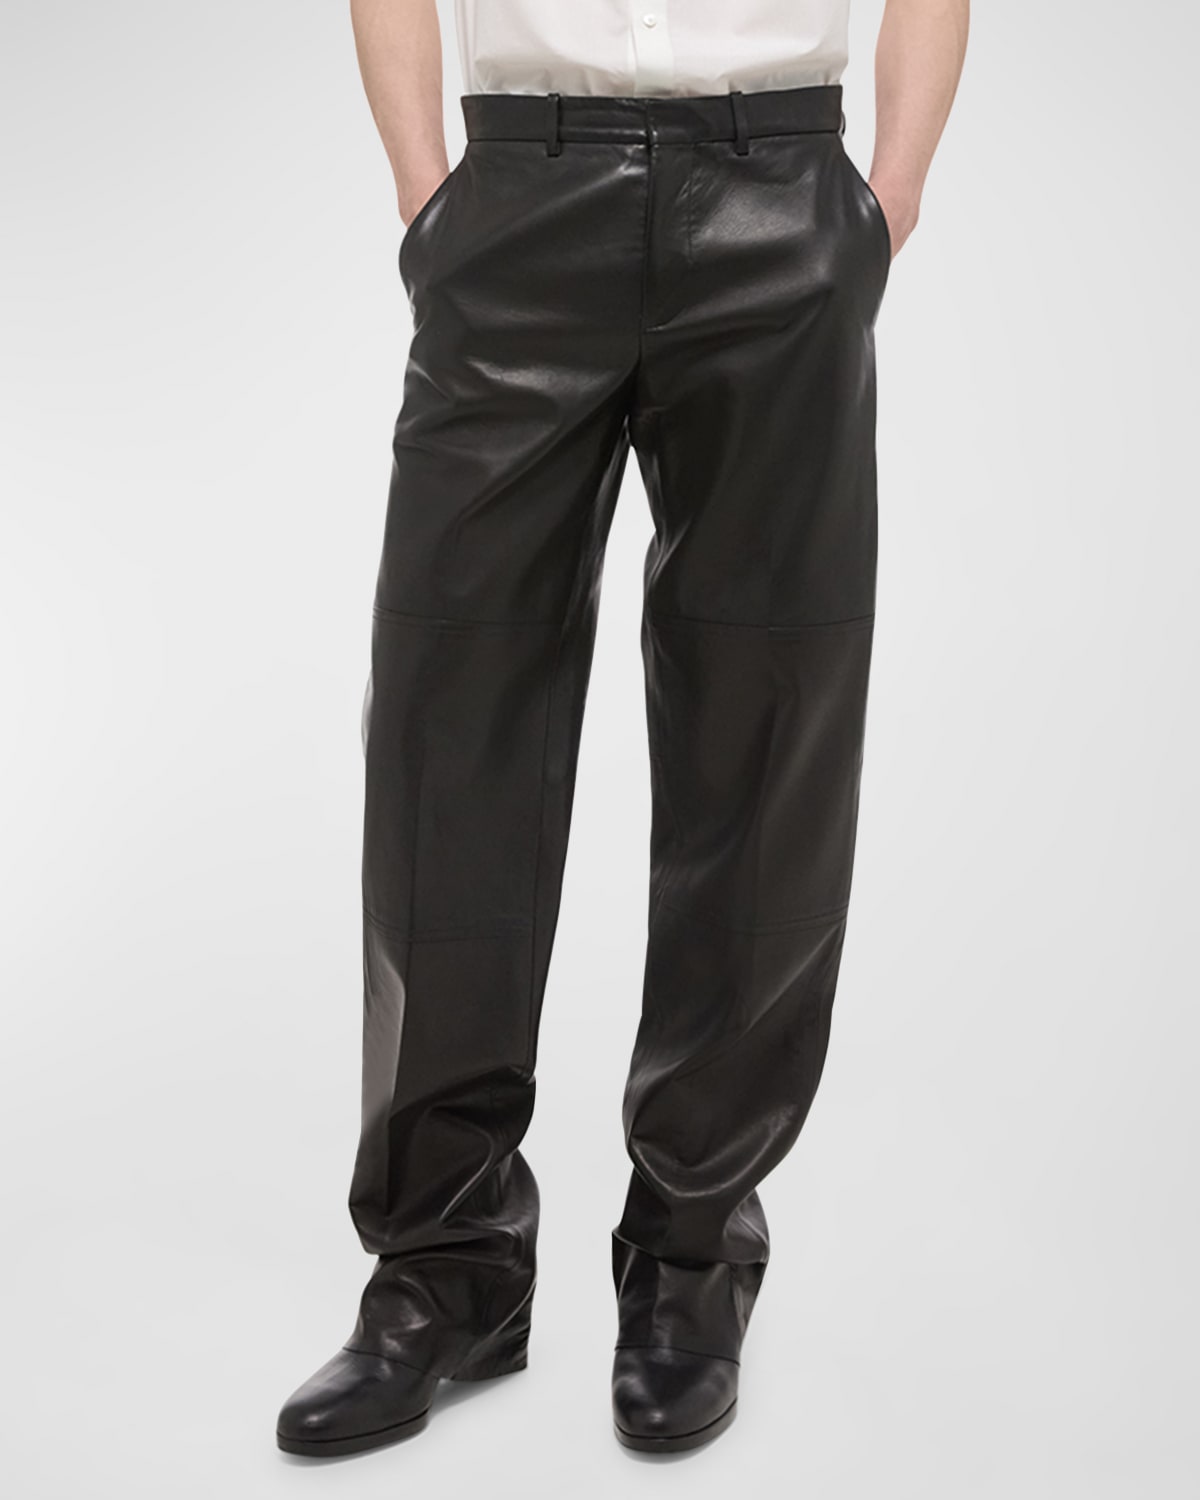 Men's Leather Carpenter Pants